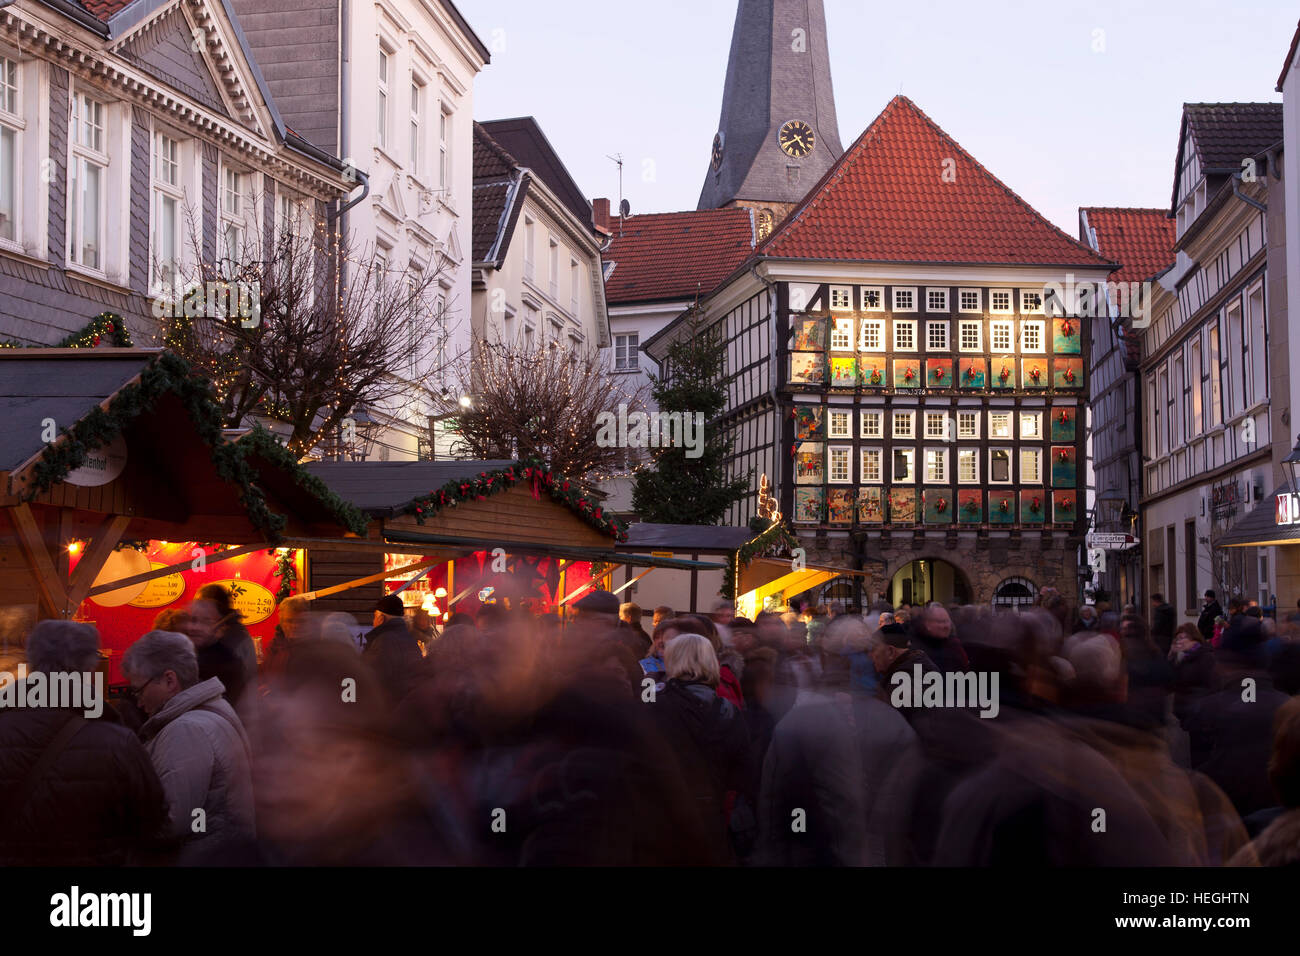 Deutschland, Hattingen, das alte Rathaus im alten Teil der Stadt in der Weihnachtszeit. Stockfoto